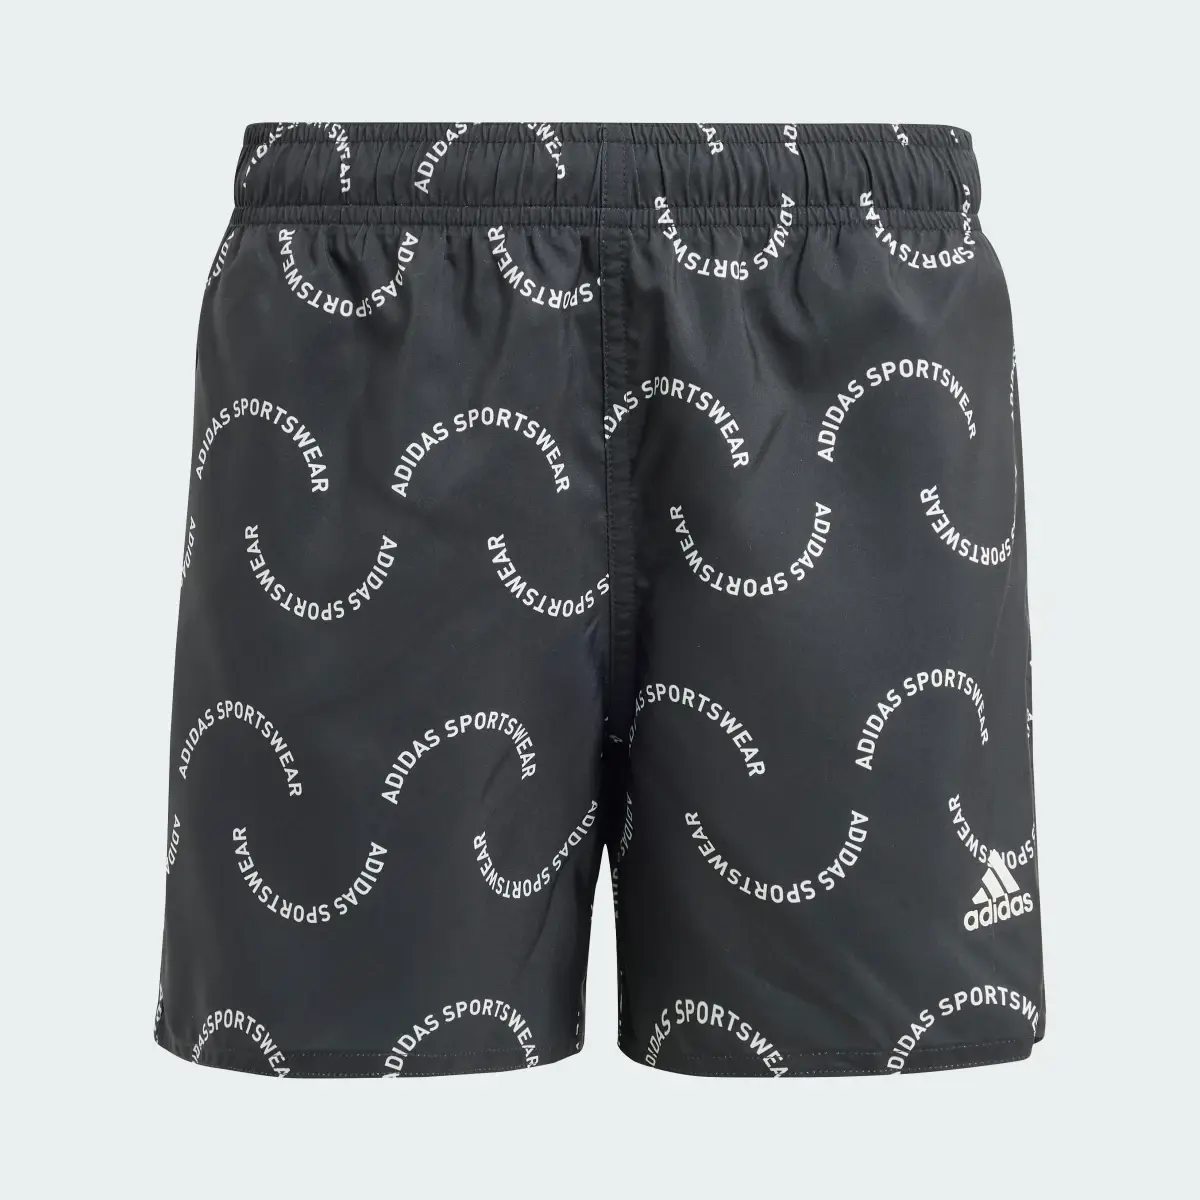 Adidas Szorty Sportswear Wave Print CLX Swim Kids. 1